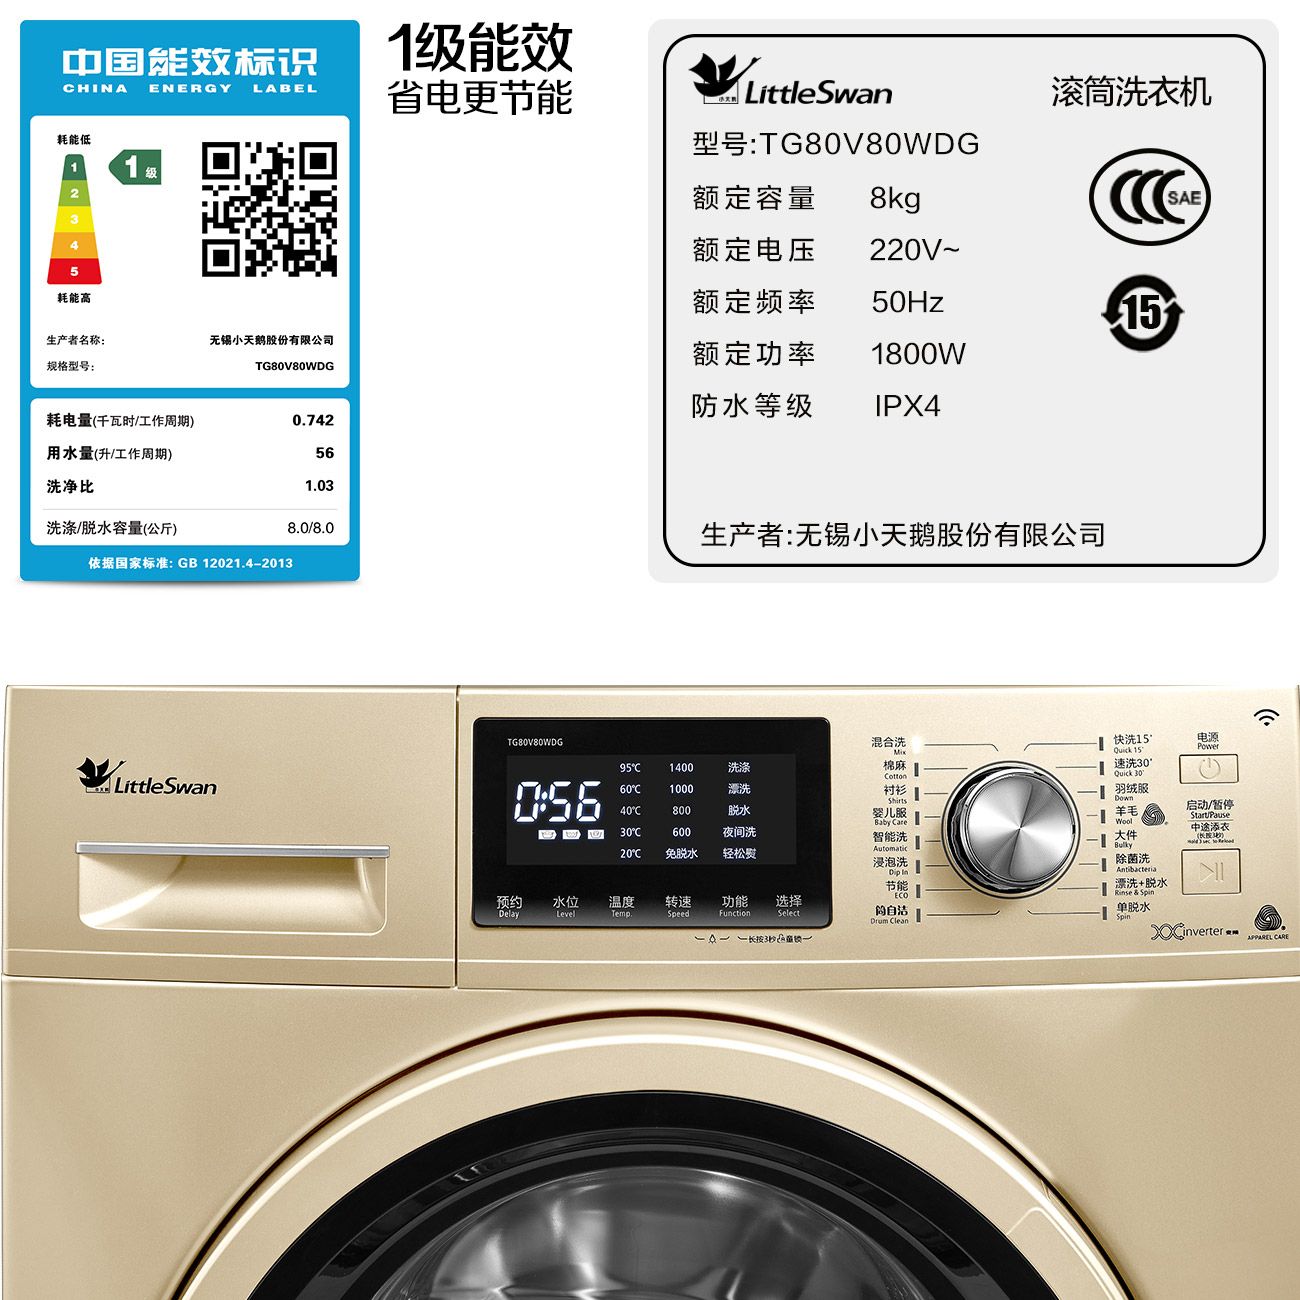 全自动洗衣机标识图片